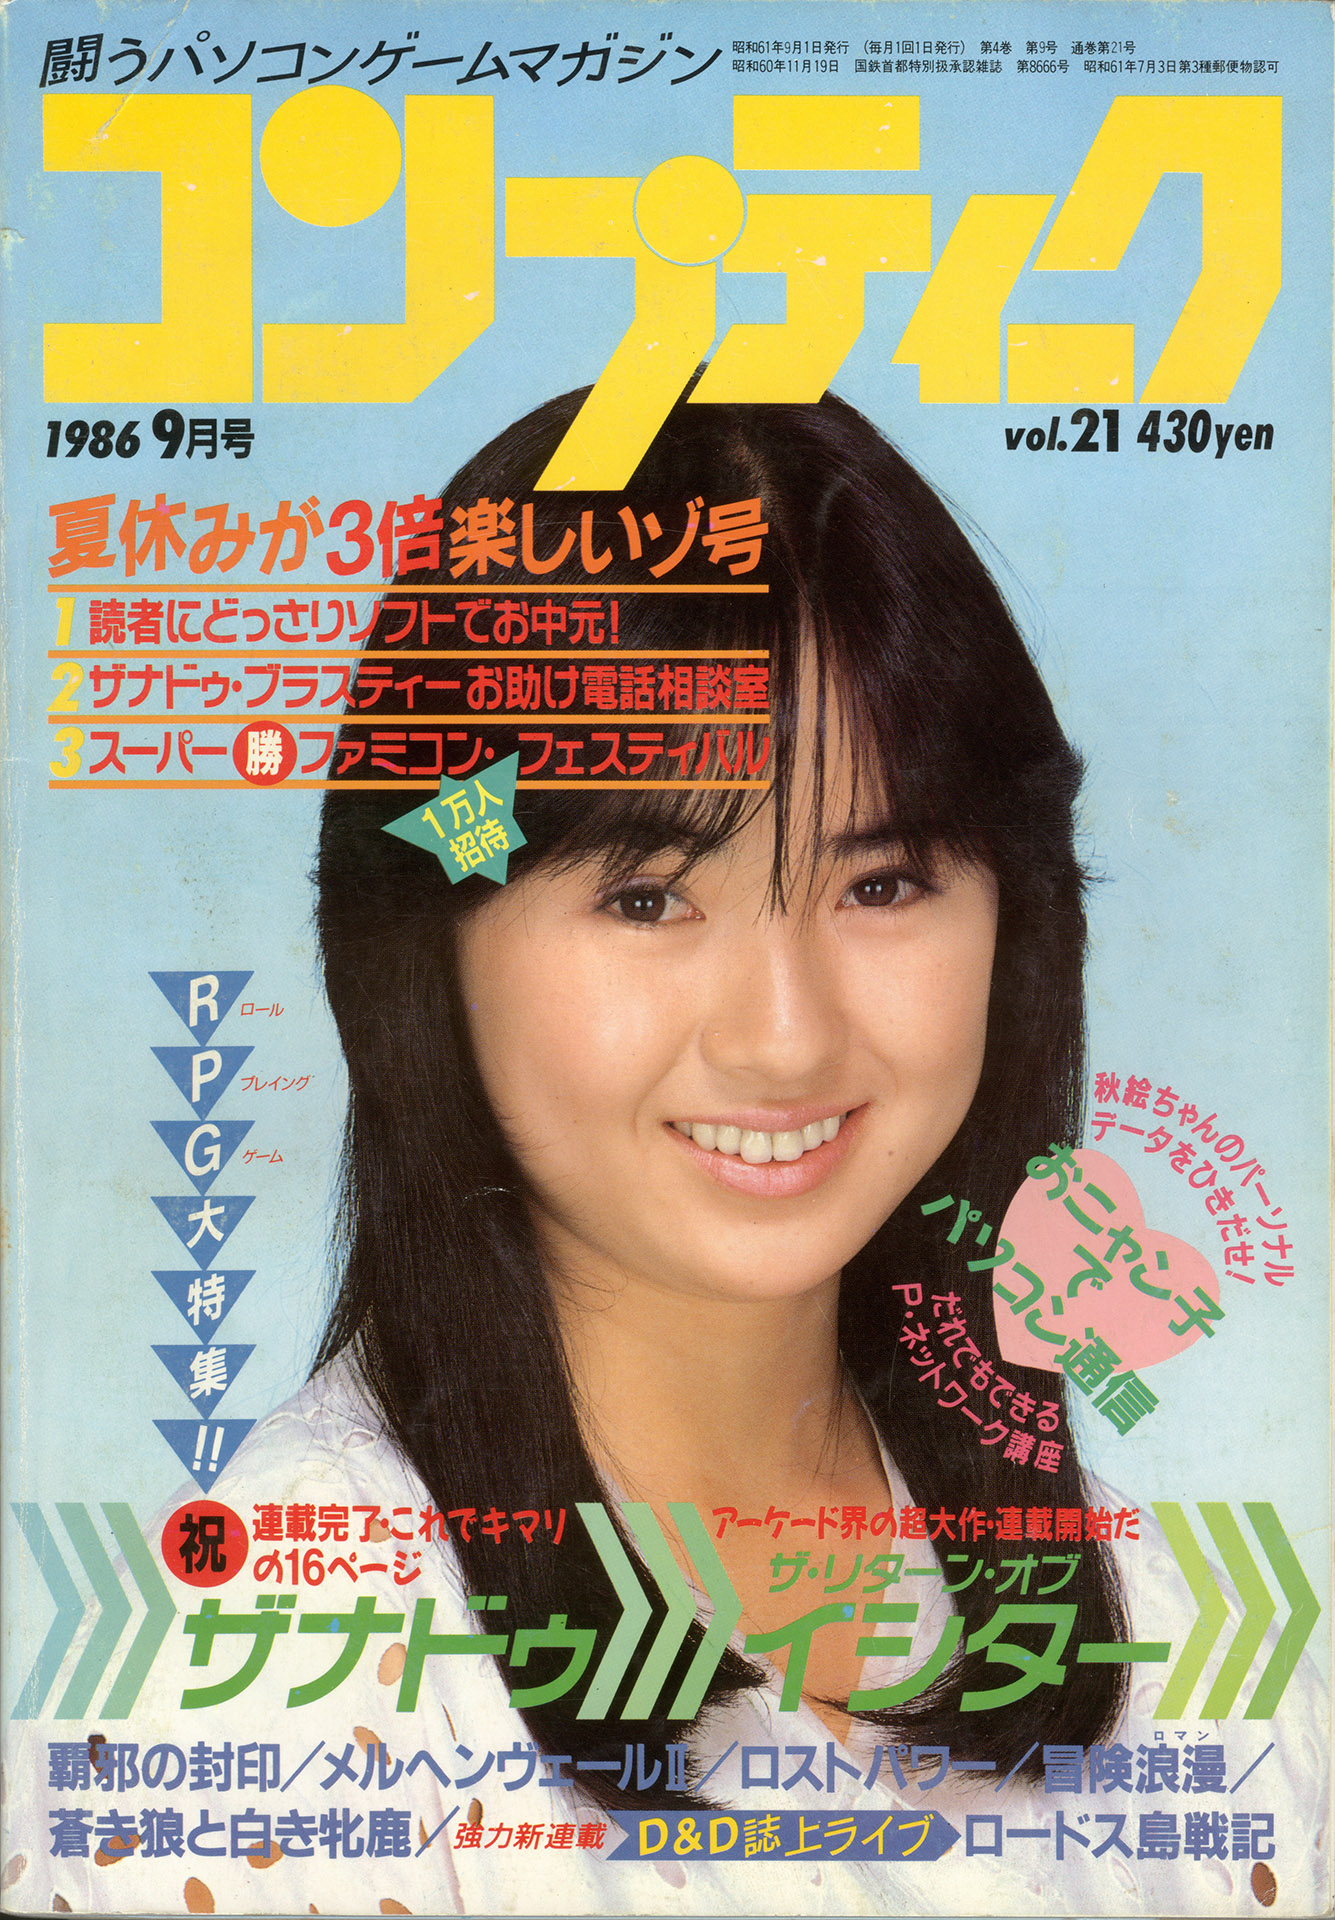 《COMPTIQ》1986年9月号封面